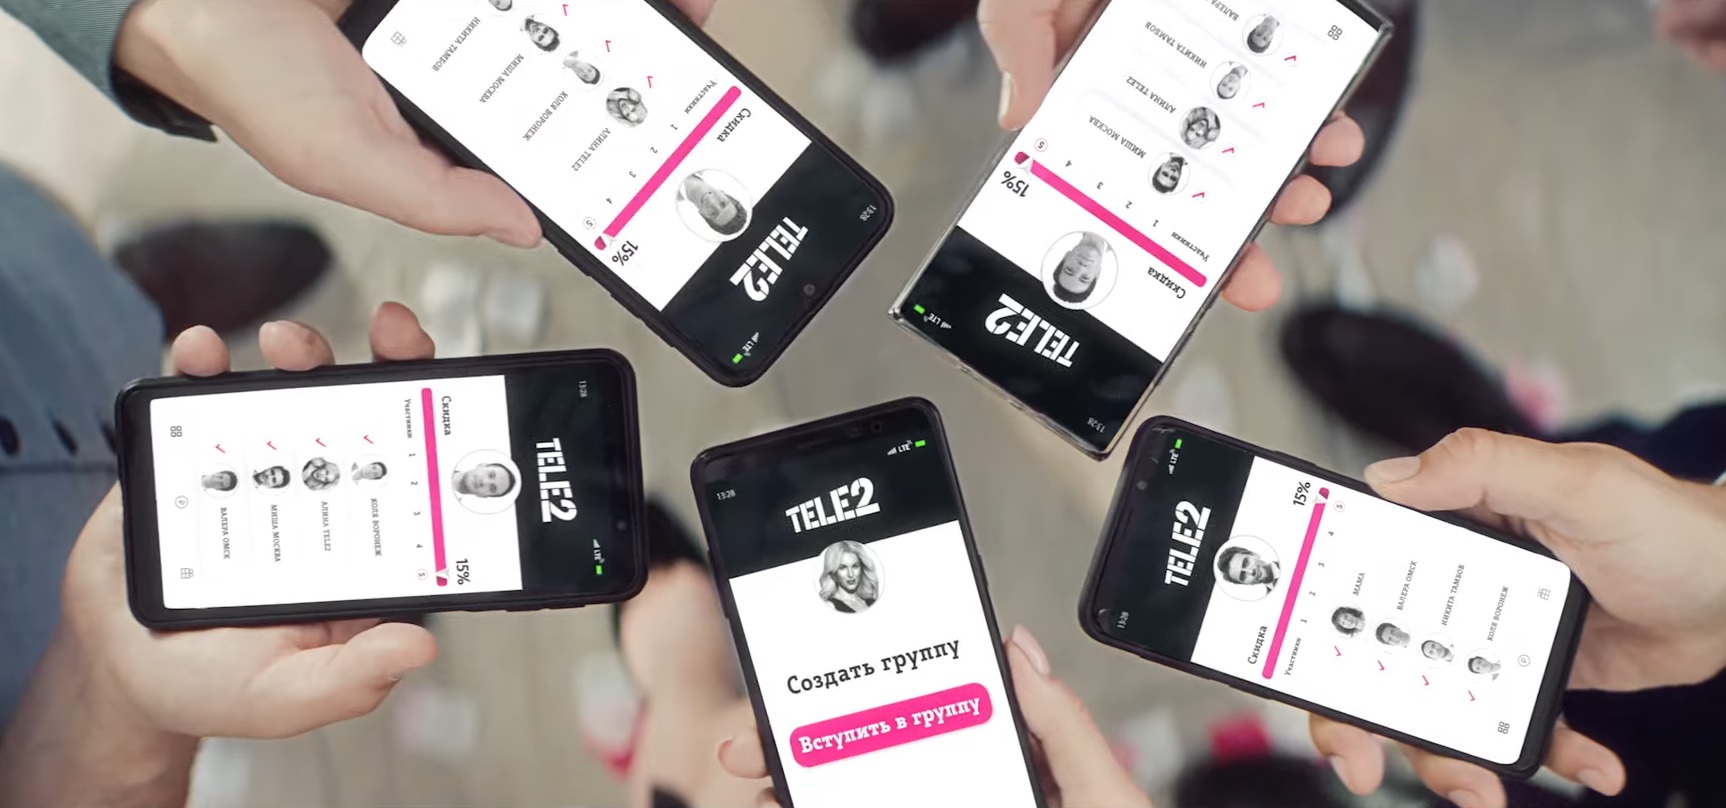 Tele2 объединяет абонентов из разных городов в программе «Выгодно вместе» 1